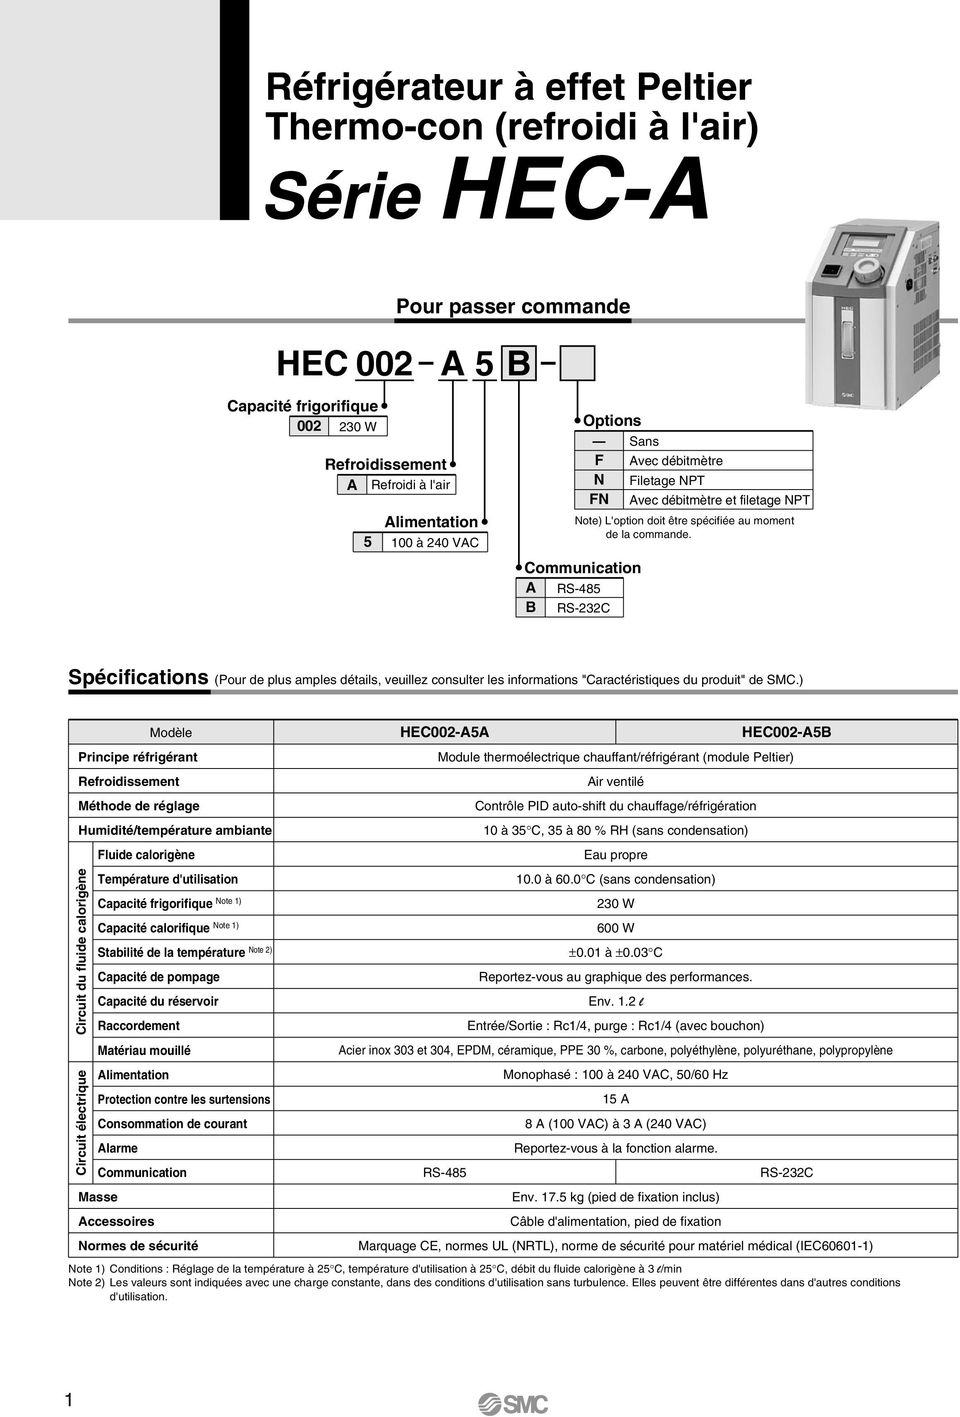 Communication A RS-485 B RS-232C Spécifications (Pour de plus amples détails, veuillez consulter les informations "Caractéristiques du produit" de SMC.